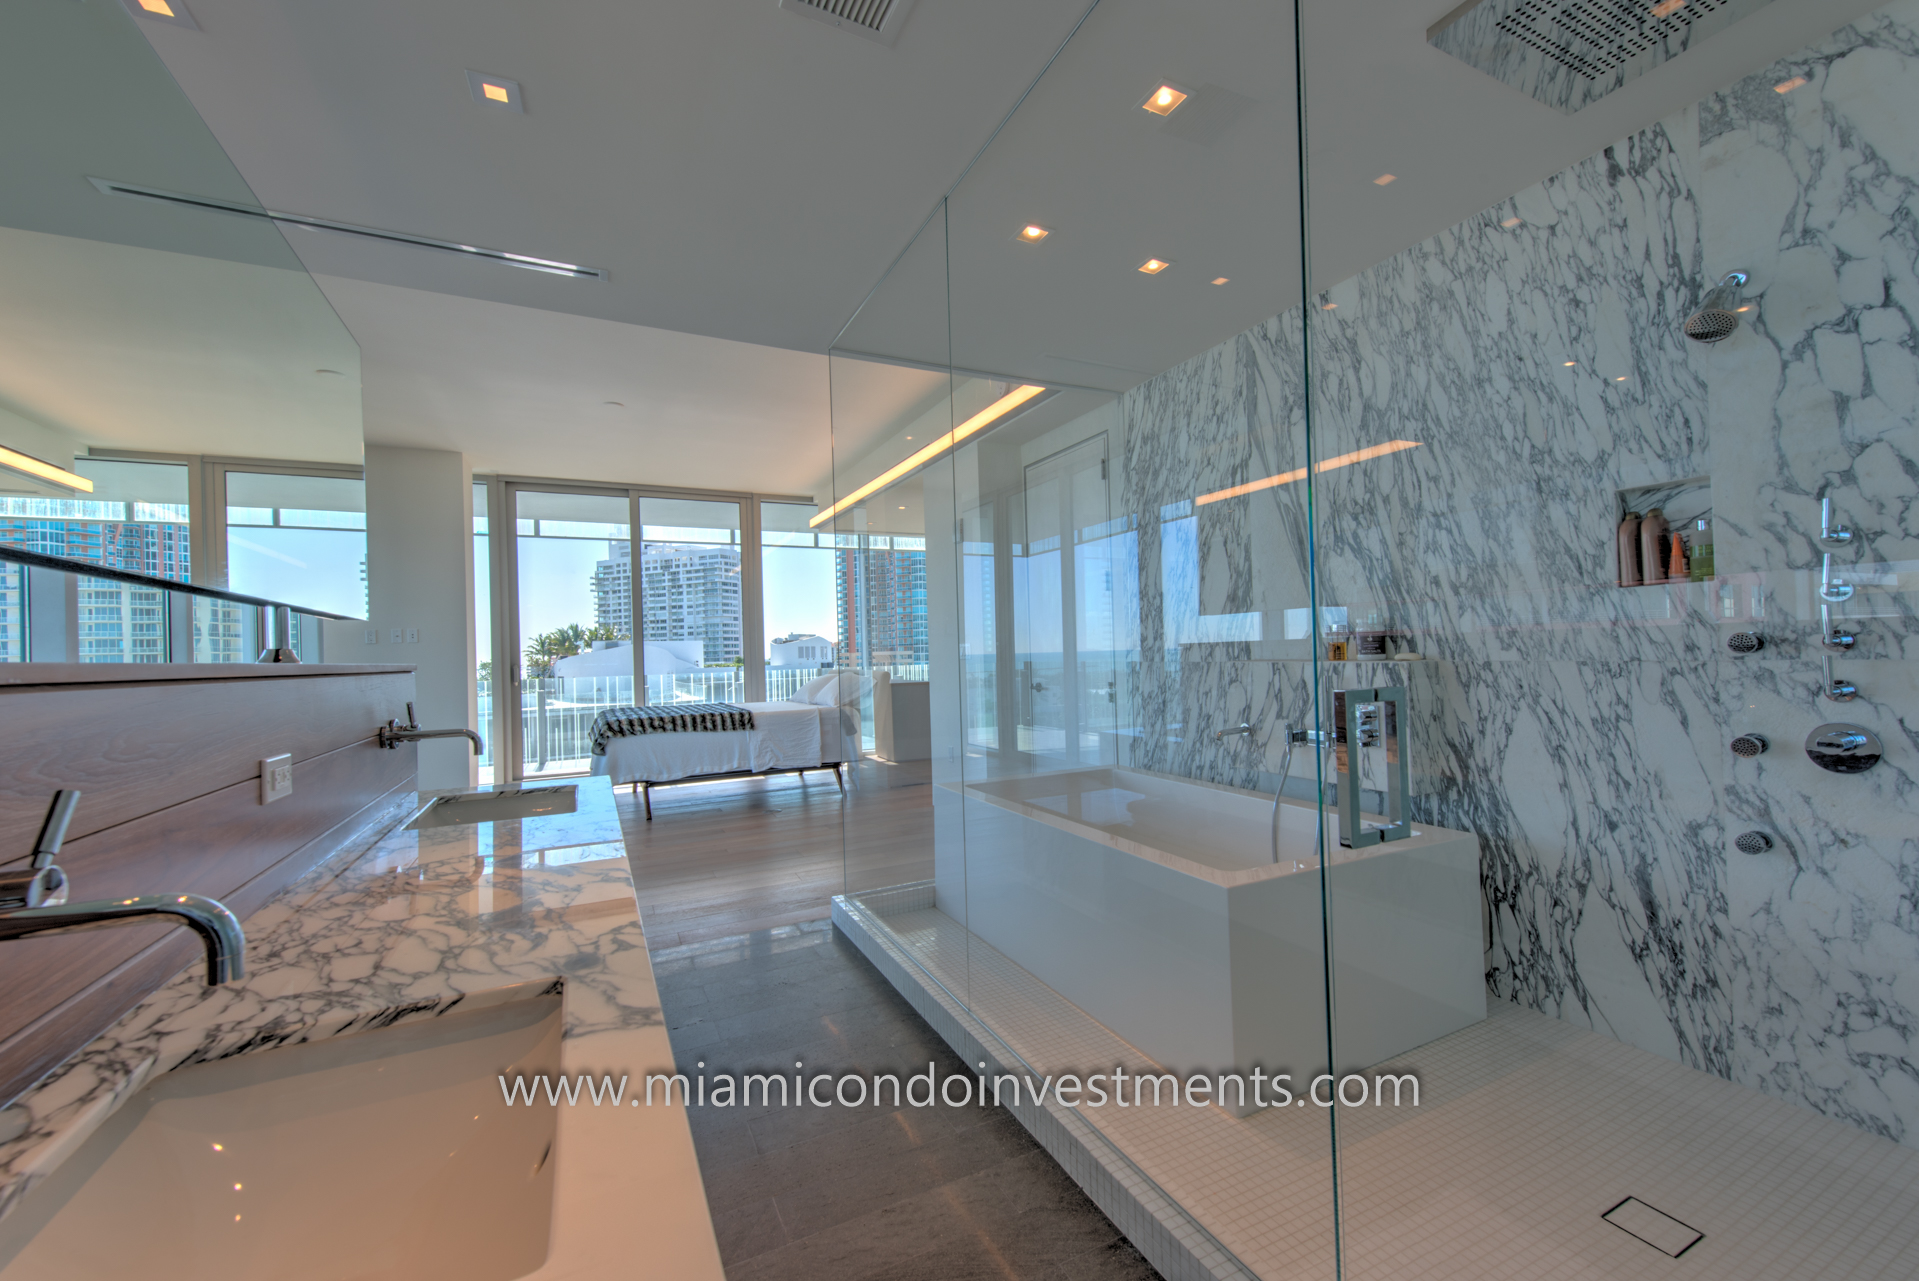 Photo Tour Of Glass Condos In Miami Beach